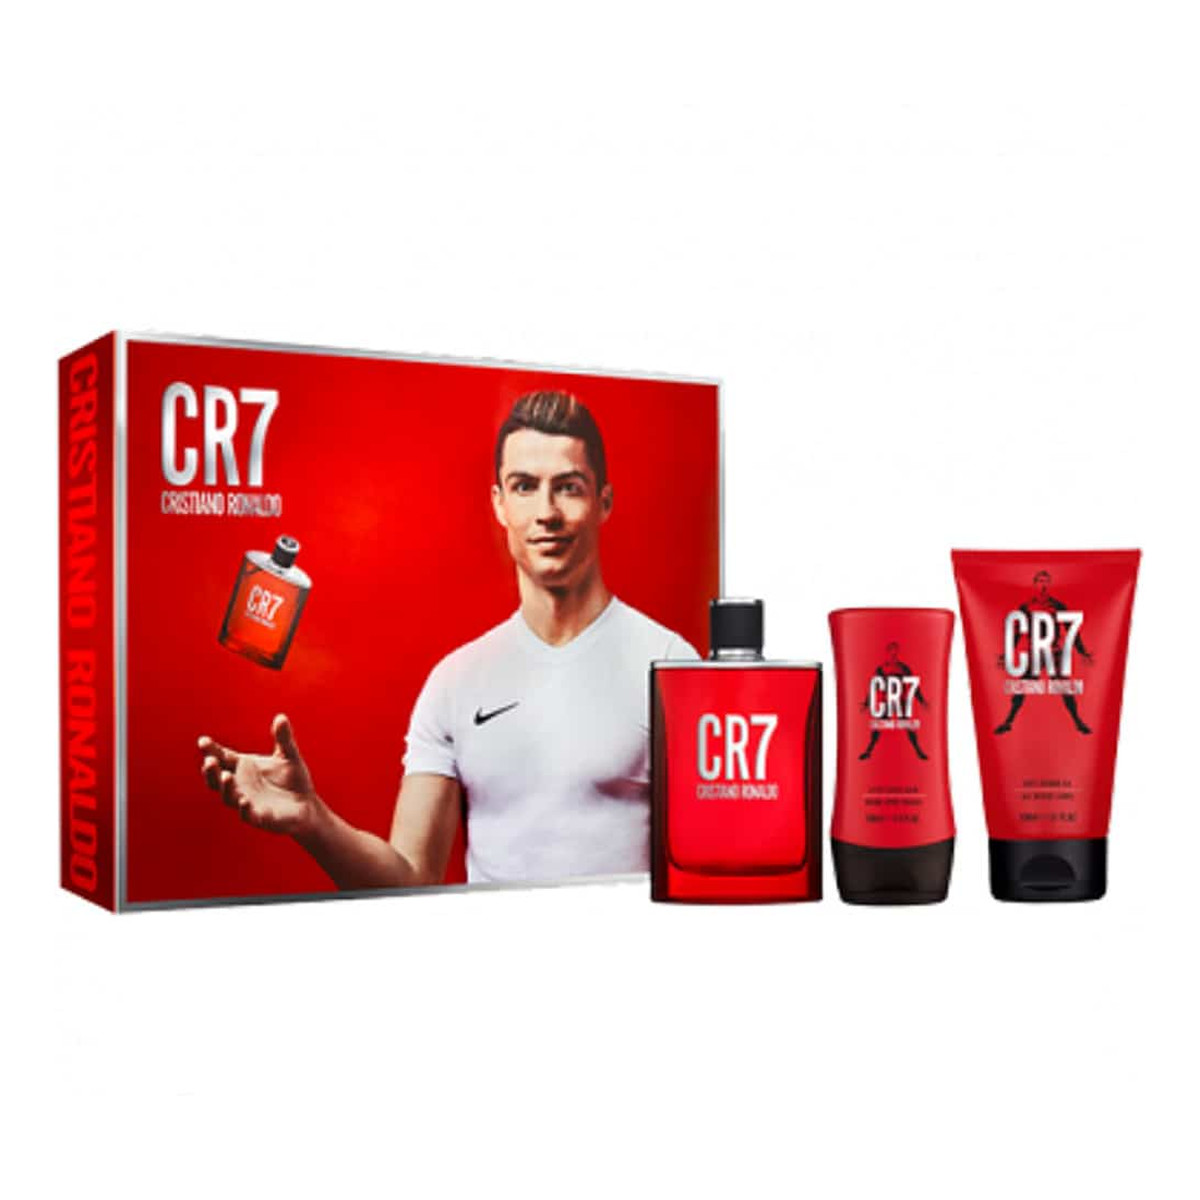 Cristiano Ronaldo CR7 Zestaw woda toaletowa spray 100ml + żel pod prysznic 150ml + balsam po goleniu 100ml